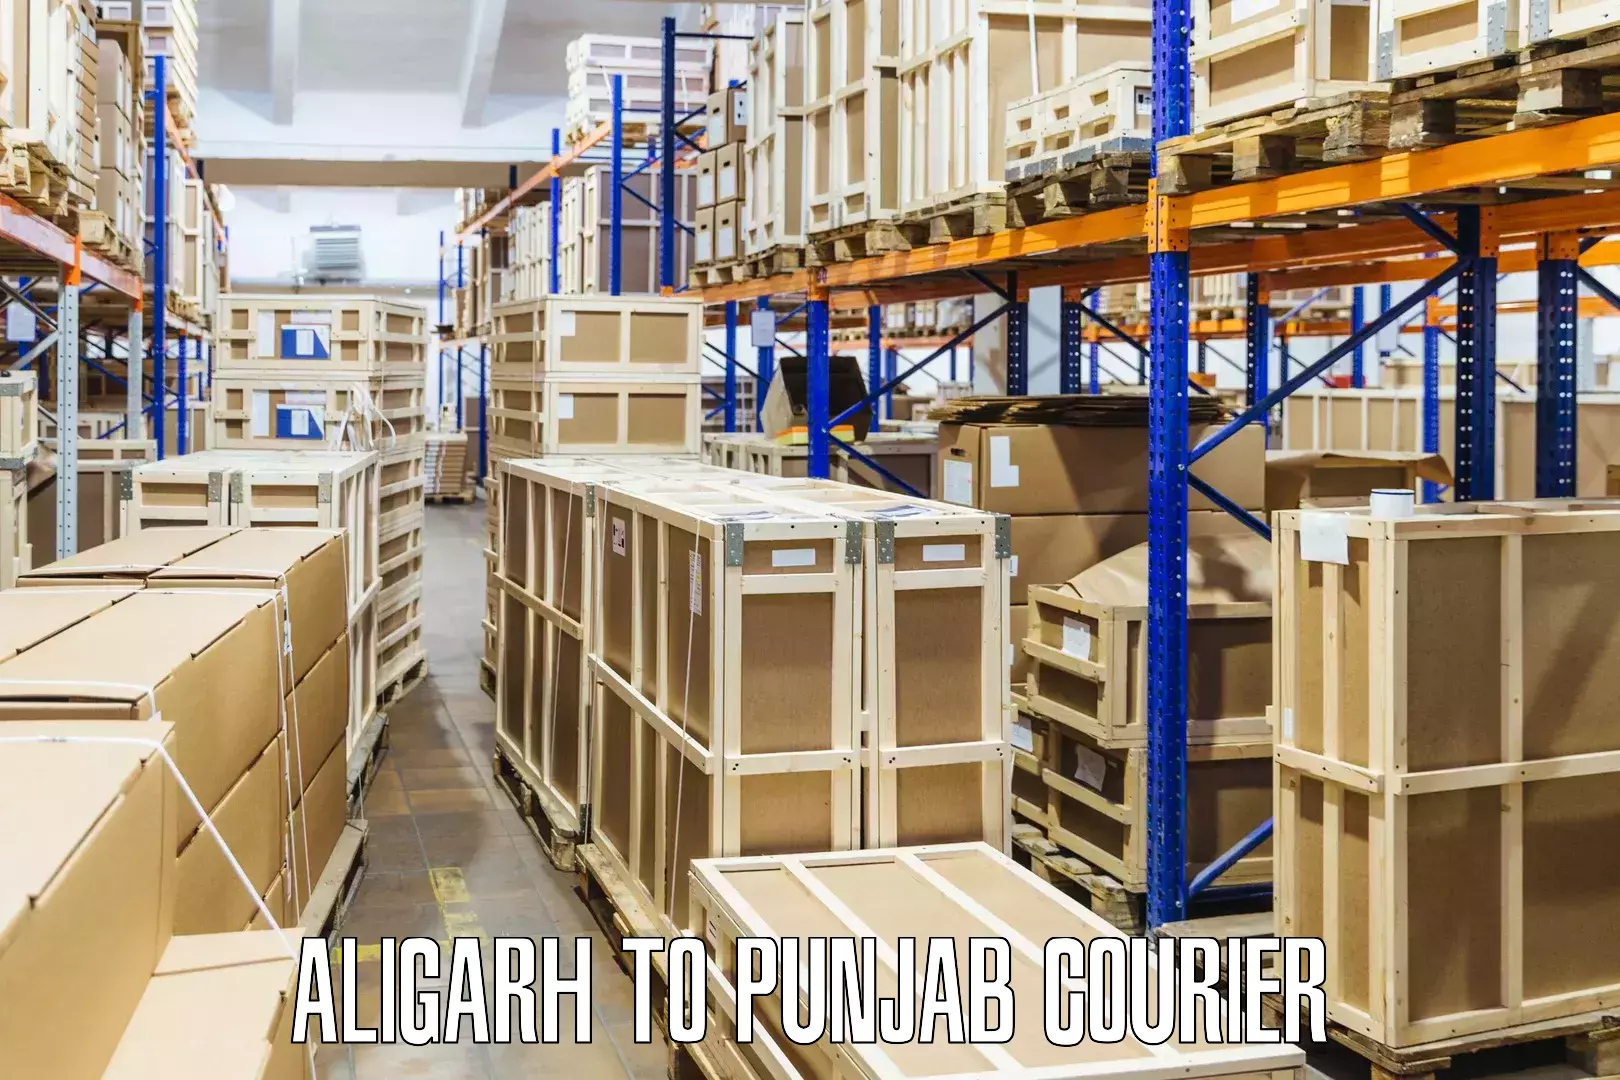 Door-to-door freight service Aligarh to Kotkapura